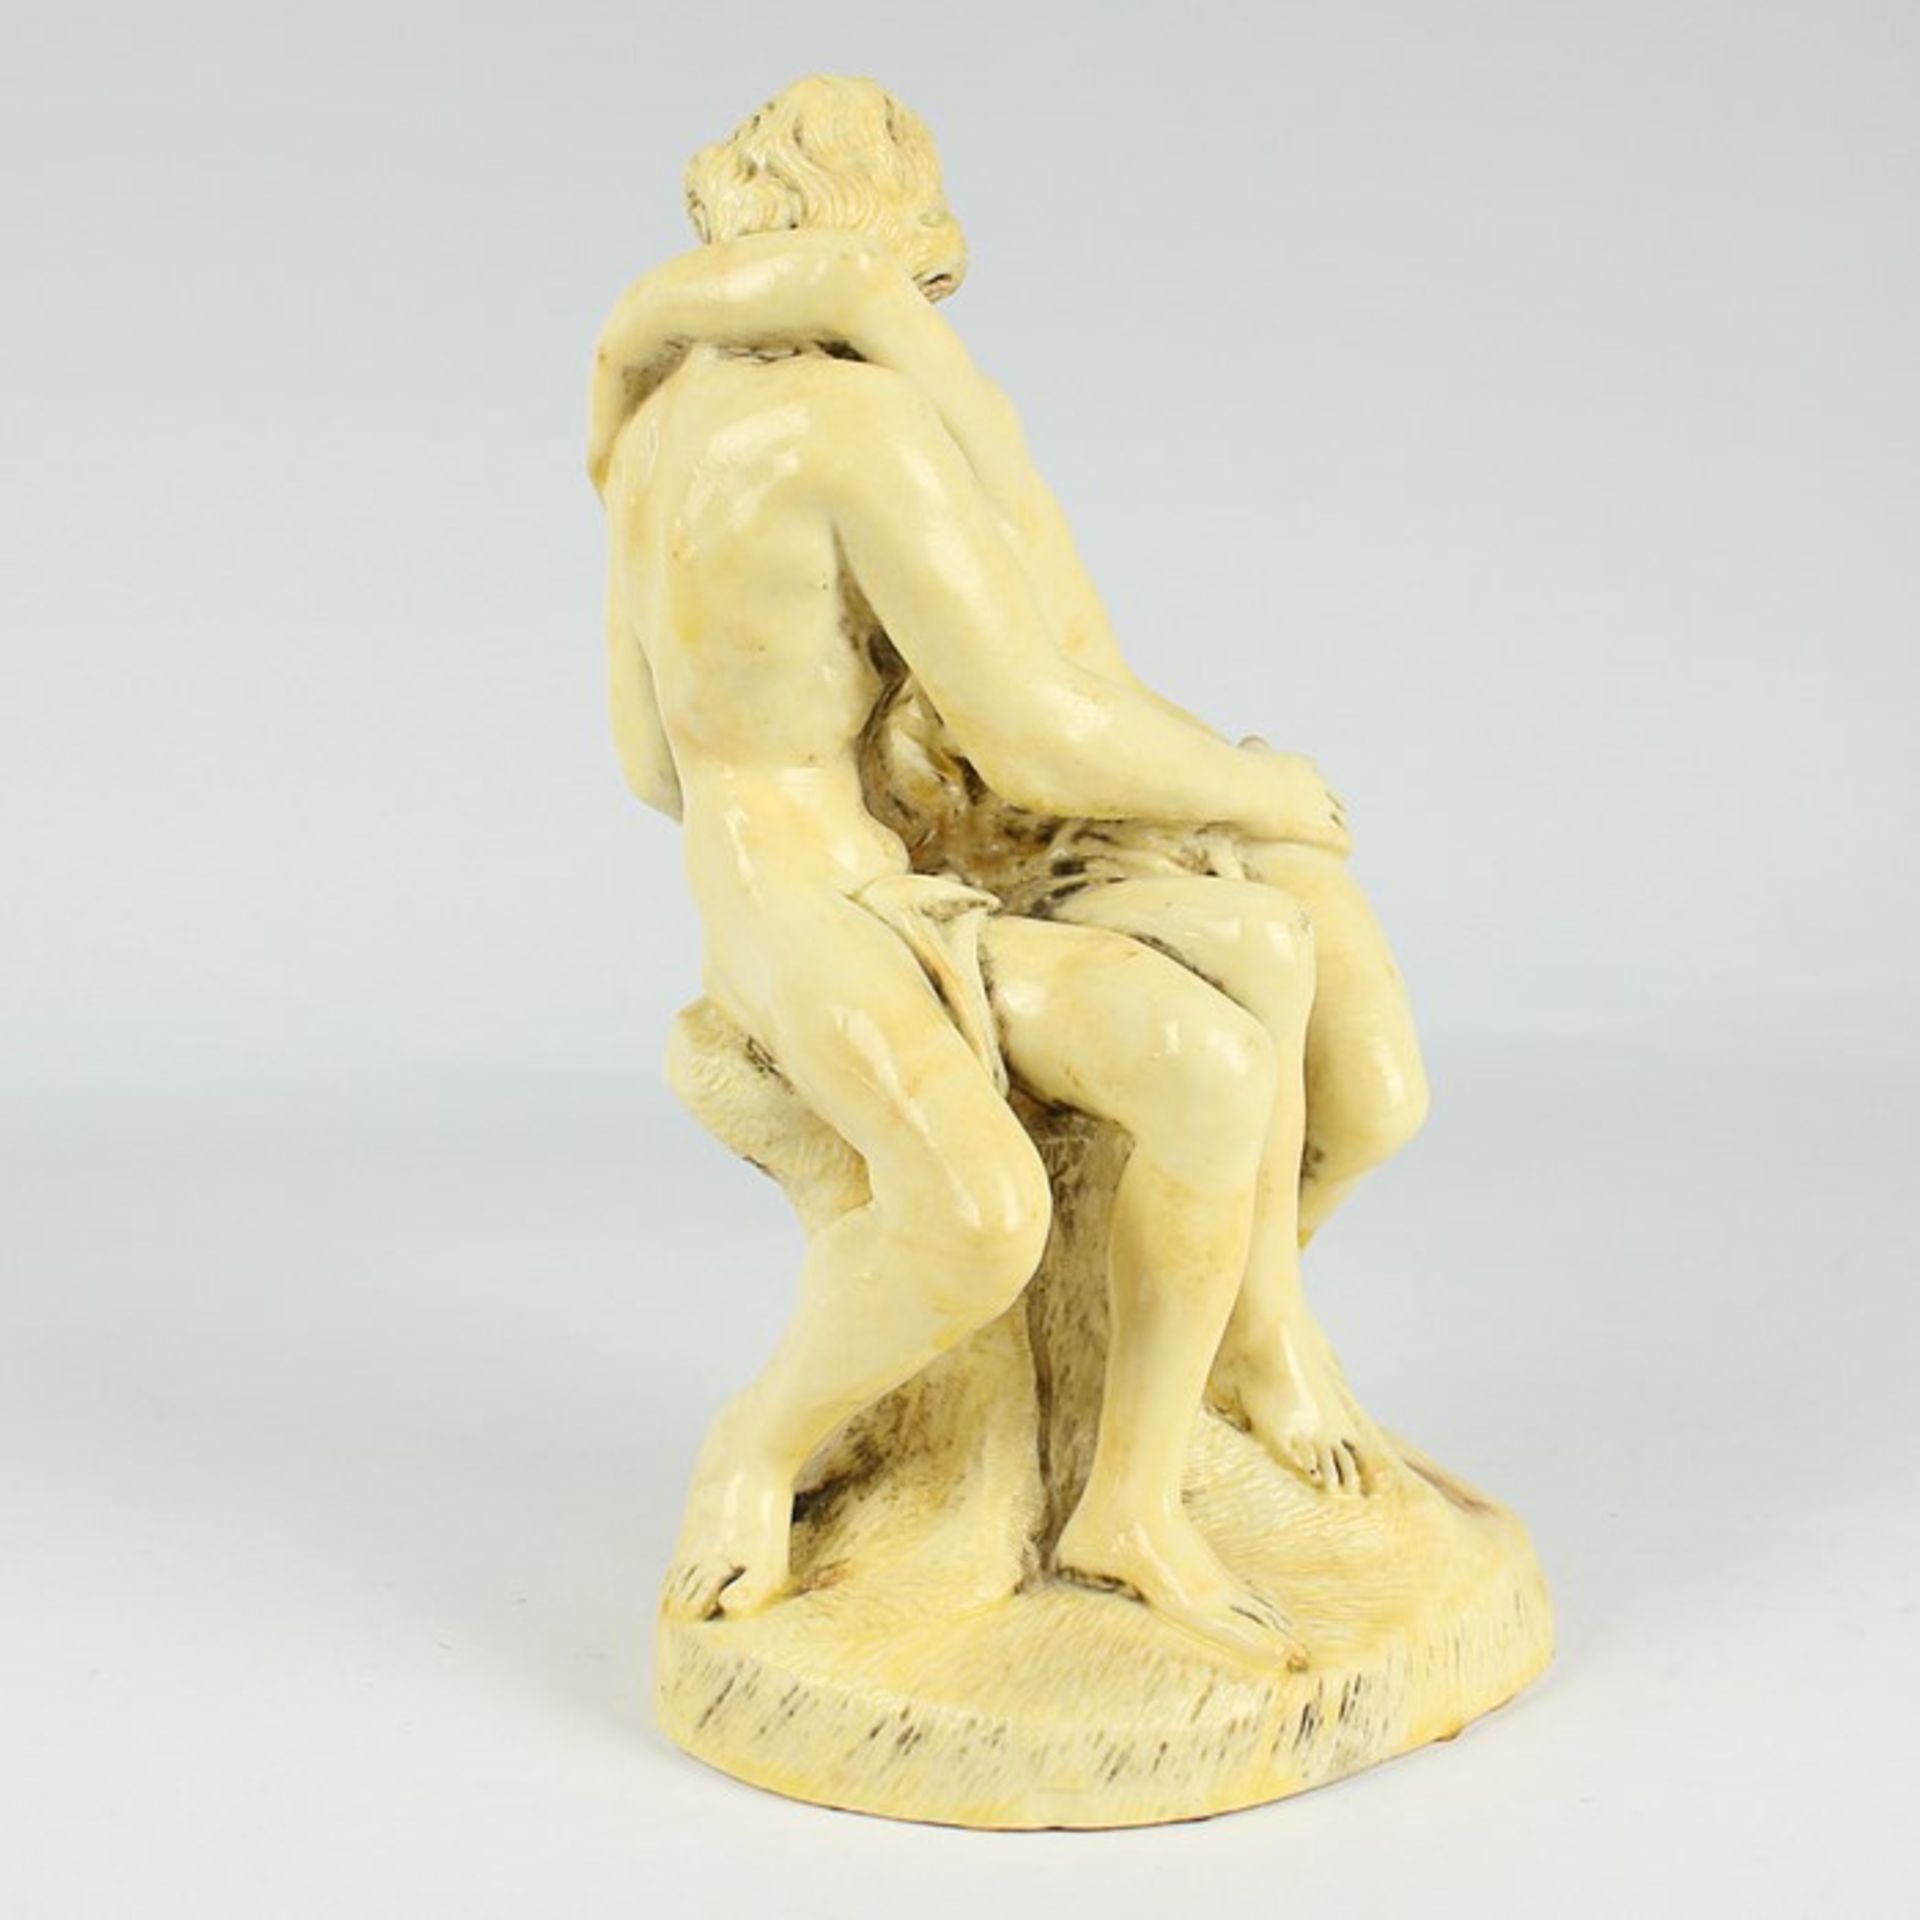 Figur20.Jh., Maße, gelblich lackiert, nach August Rodin "Der Kuss", vollplastische Figurengruppe - Bild 3 aus 6